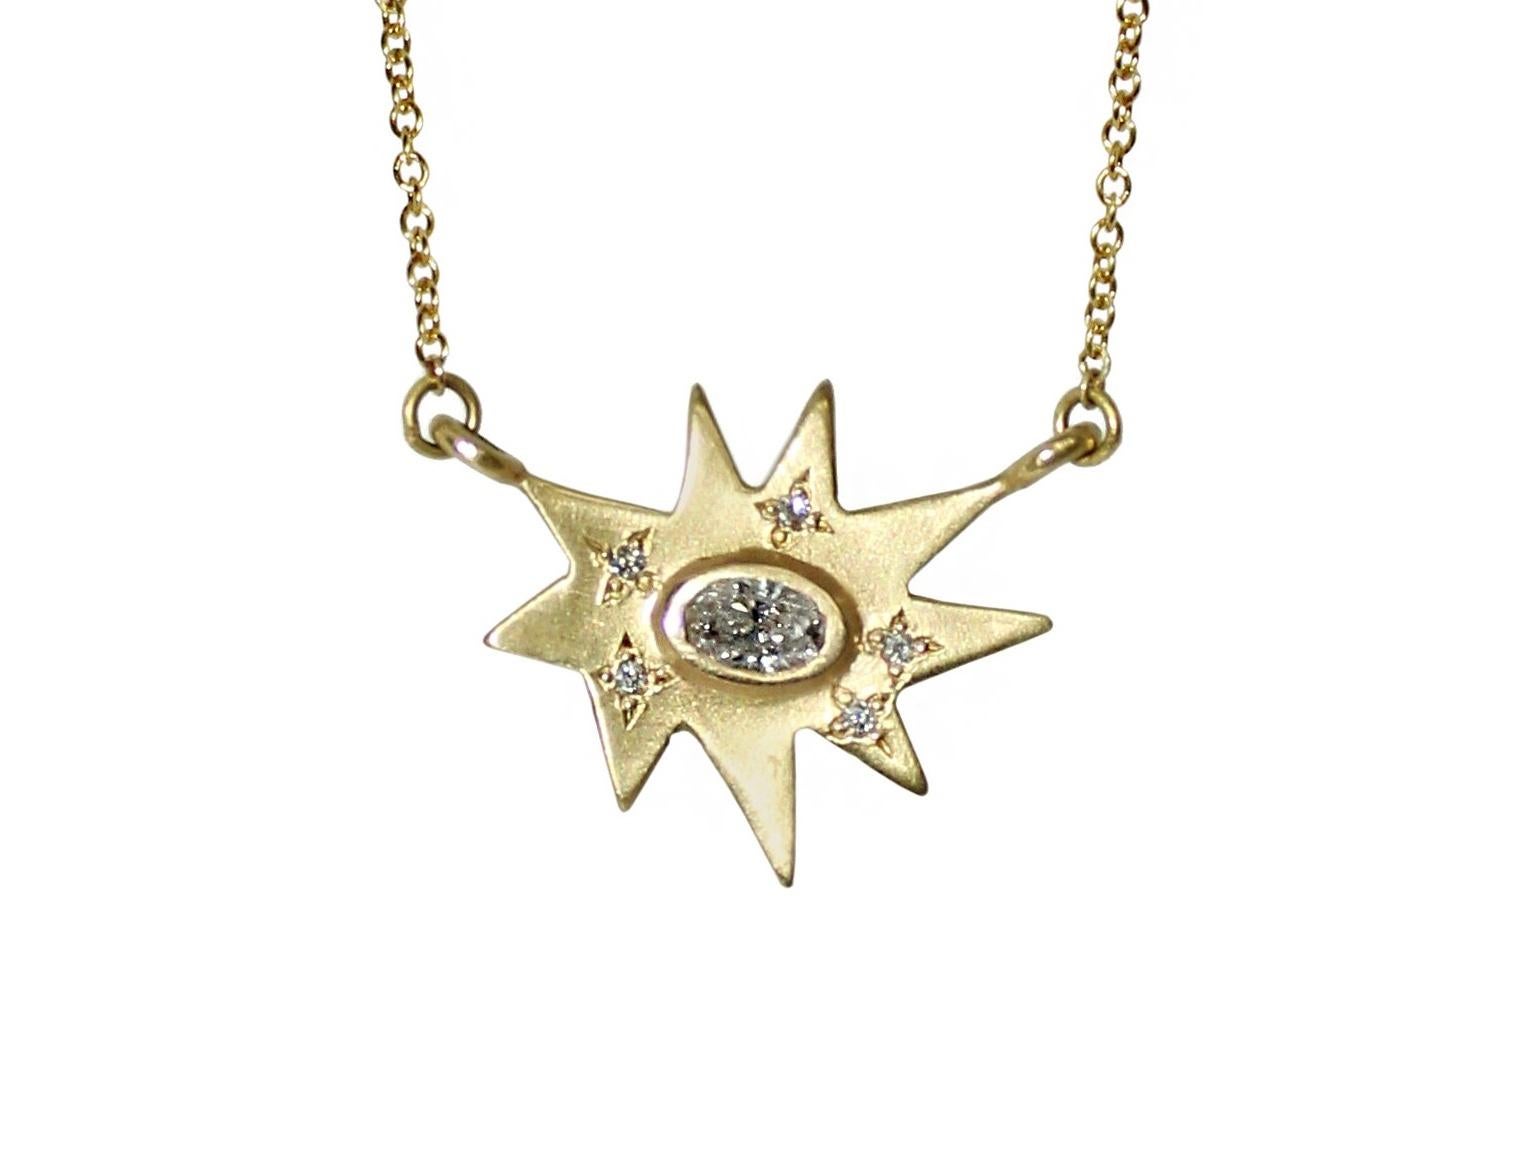 Füge ein wenig Glanz hinzu! Klassisch, modern und atemberaubend. Unsere ikonische, organische, sternförmige Stellina-Halskette aus mattem Gelbgold zeichnet sich durch unseren charakteristischen Diamantstaub und einen atemberaubenden Diamanten in der